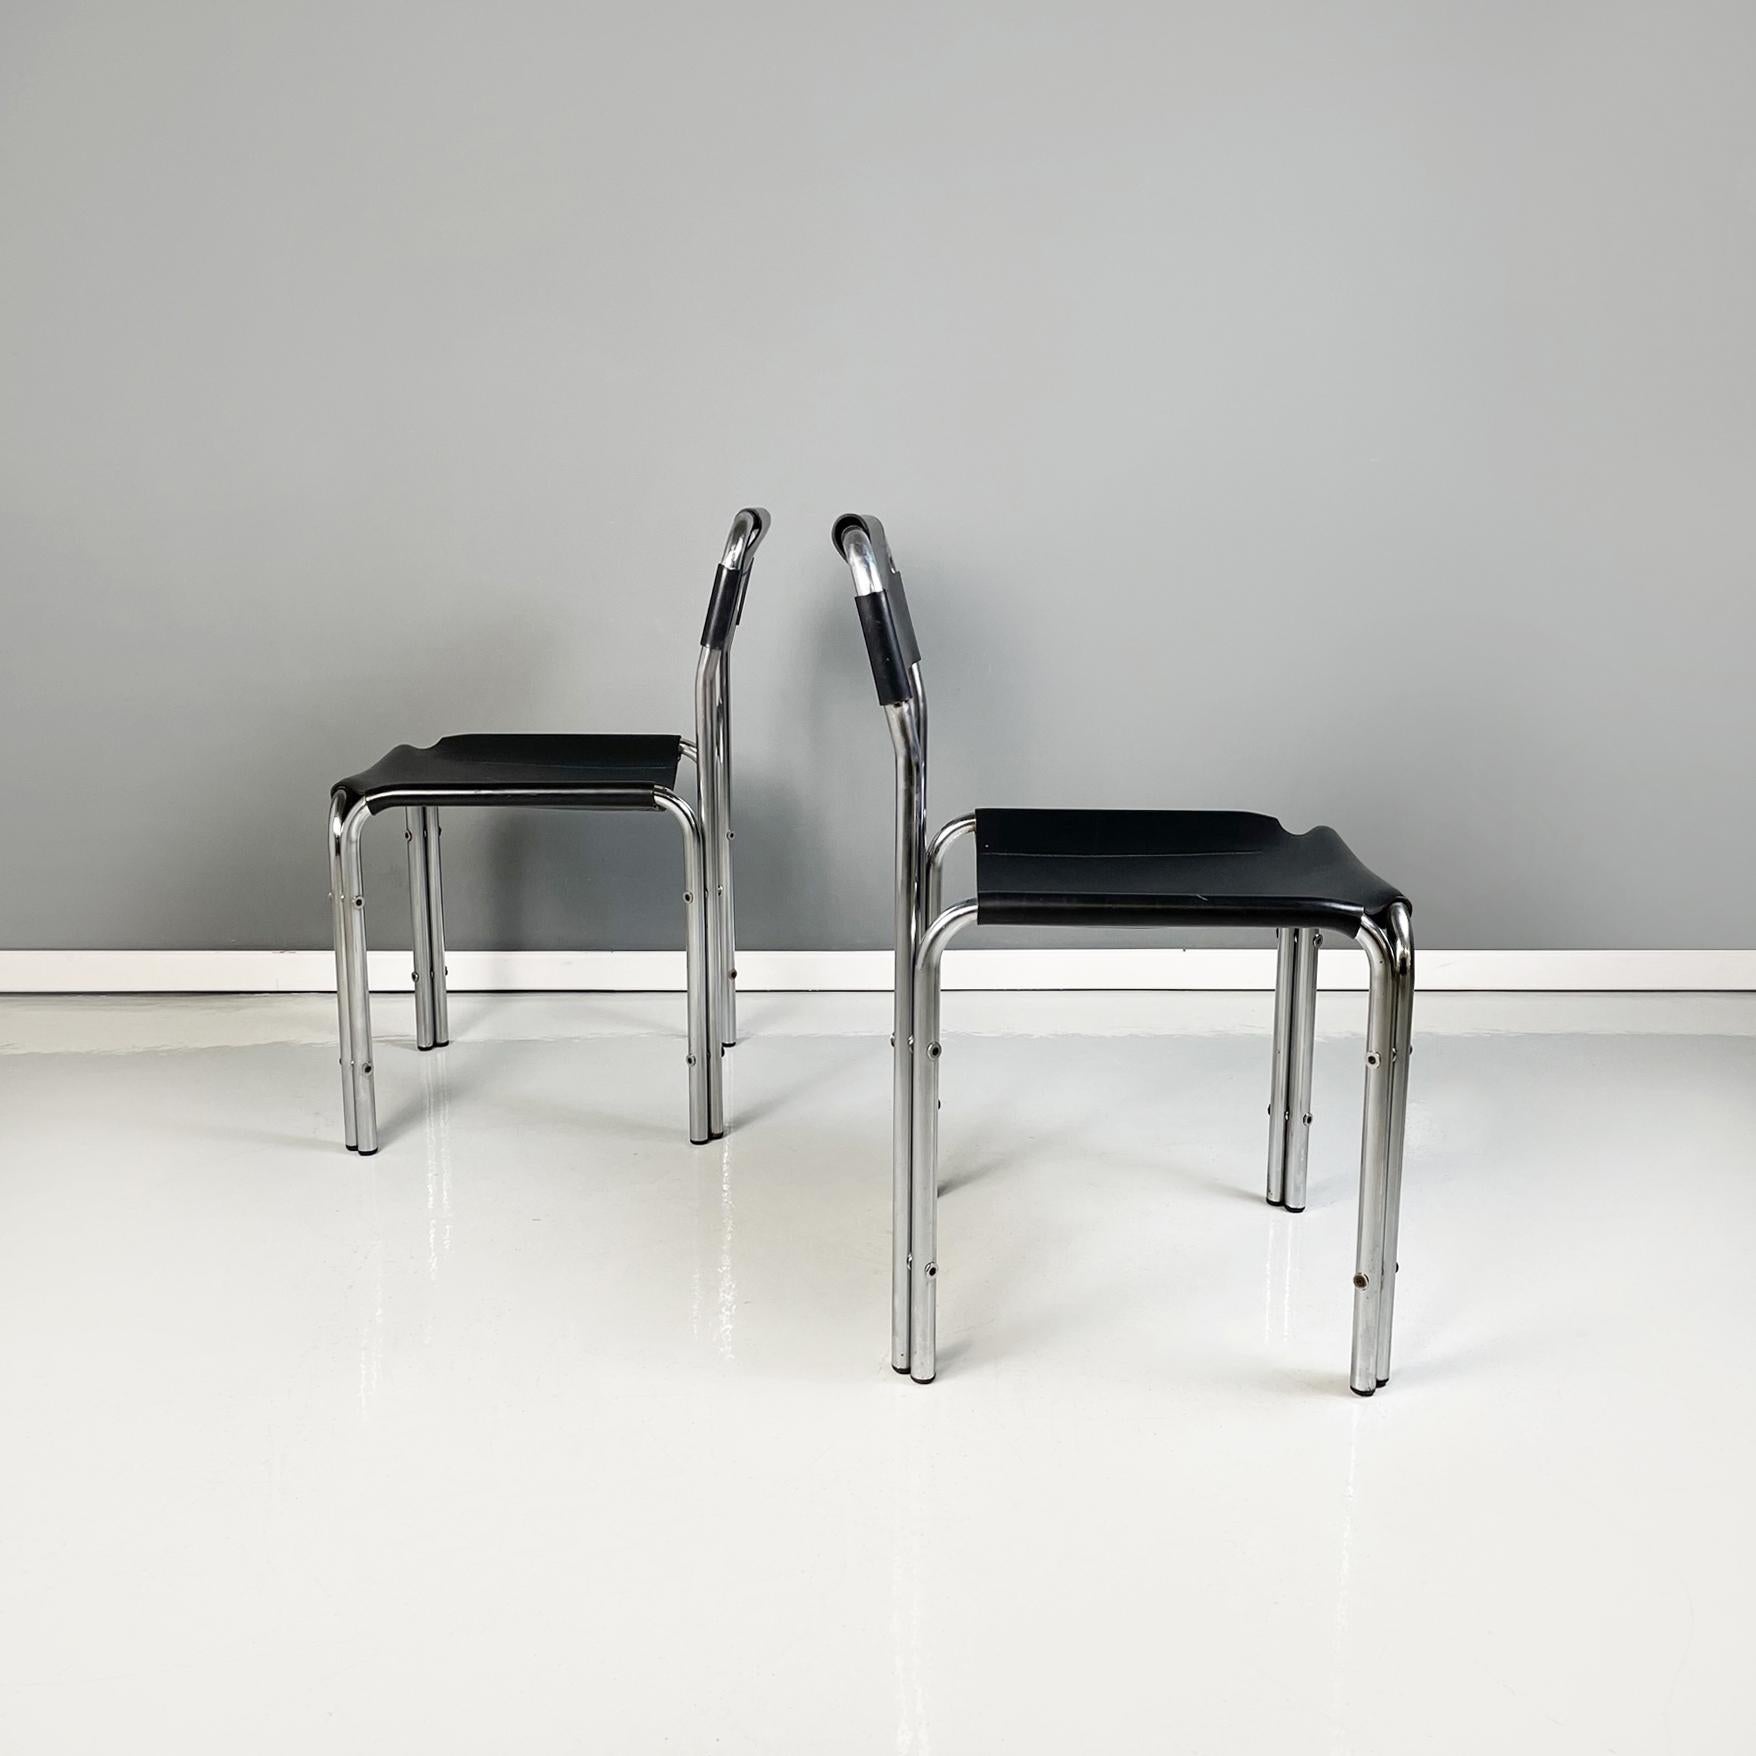 Chaises modernes italiennes en cuir noir et métal tubulaire, années 1980.
Ensemble de quatre chaises avec structure en métal tubulaire. L'assise carrée et le dossier rectangulaire en cuir noir suivent la forme de la structure. Coutures